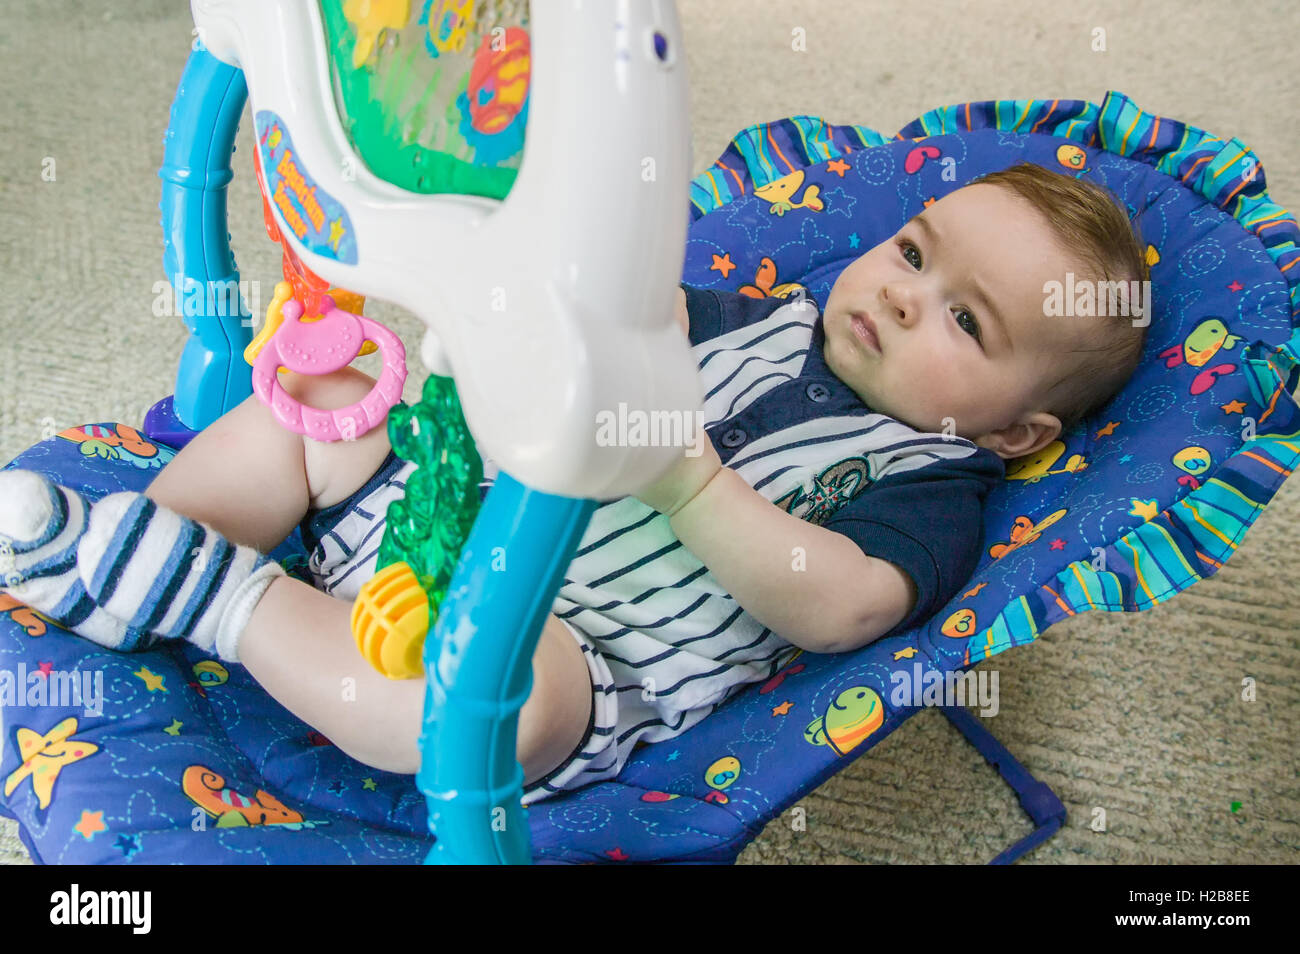 Vier Monate altes Baby junge liegend in einem Schaukelstuhl sitzen in seinem Haus, unterhalten sich mit dem obenliegenden Spielzeug Stockfoto